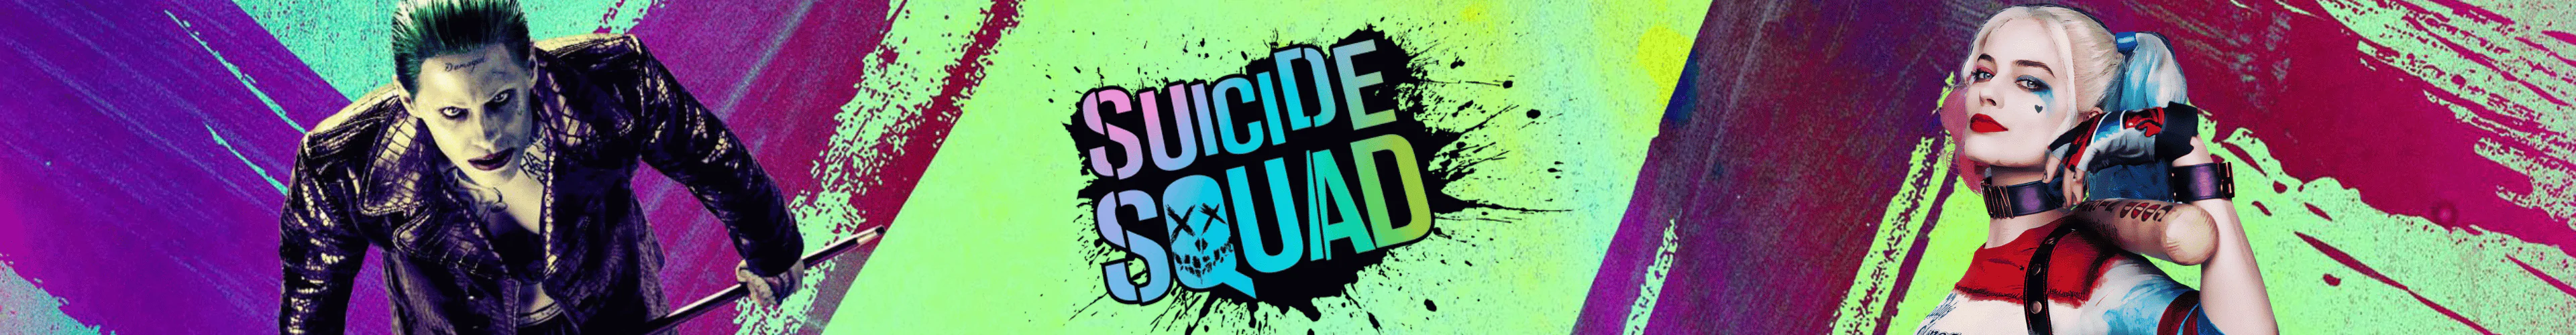 Suicide Squad mäppchen banner